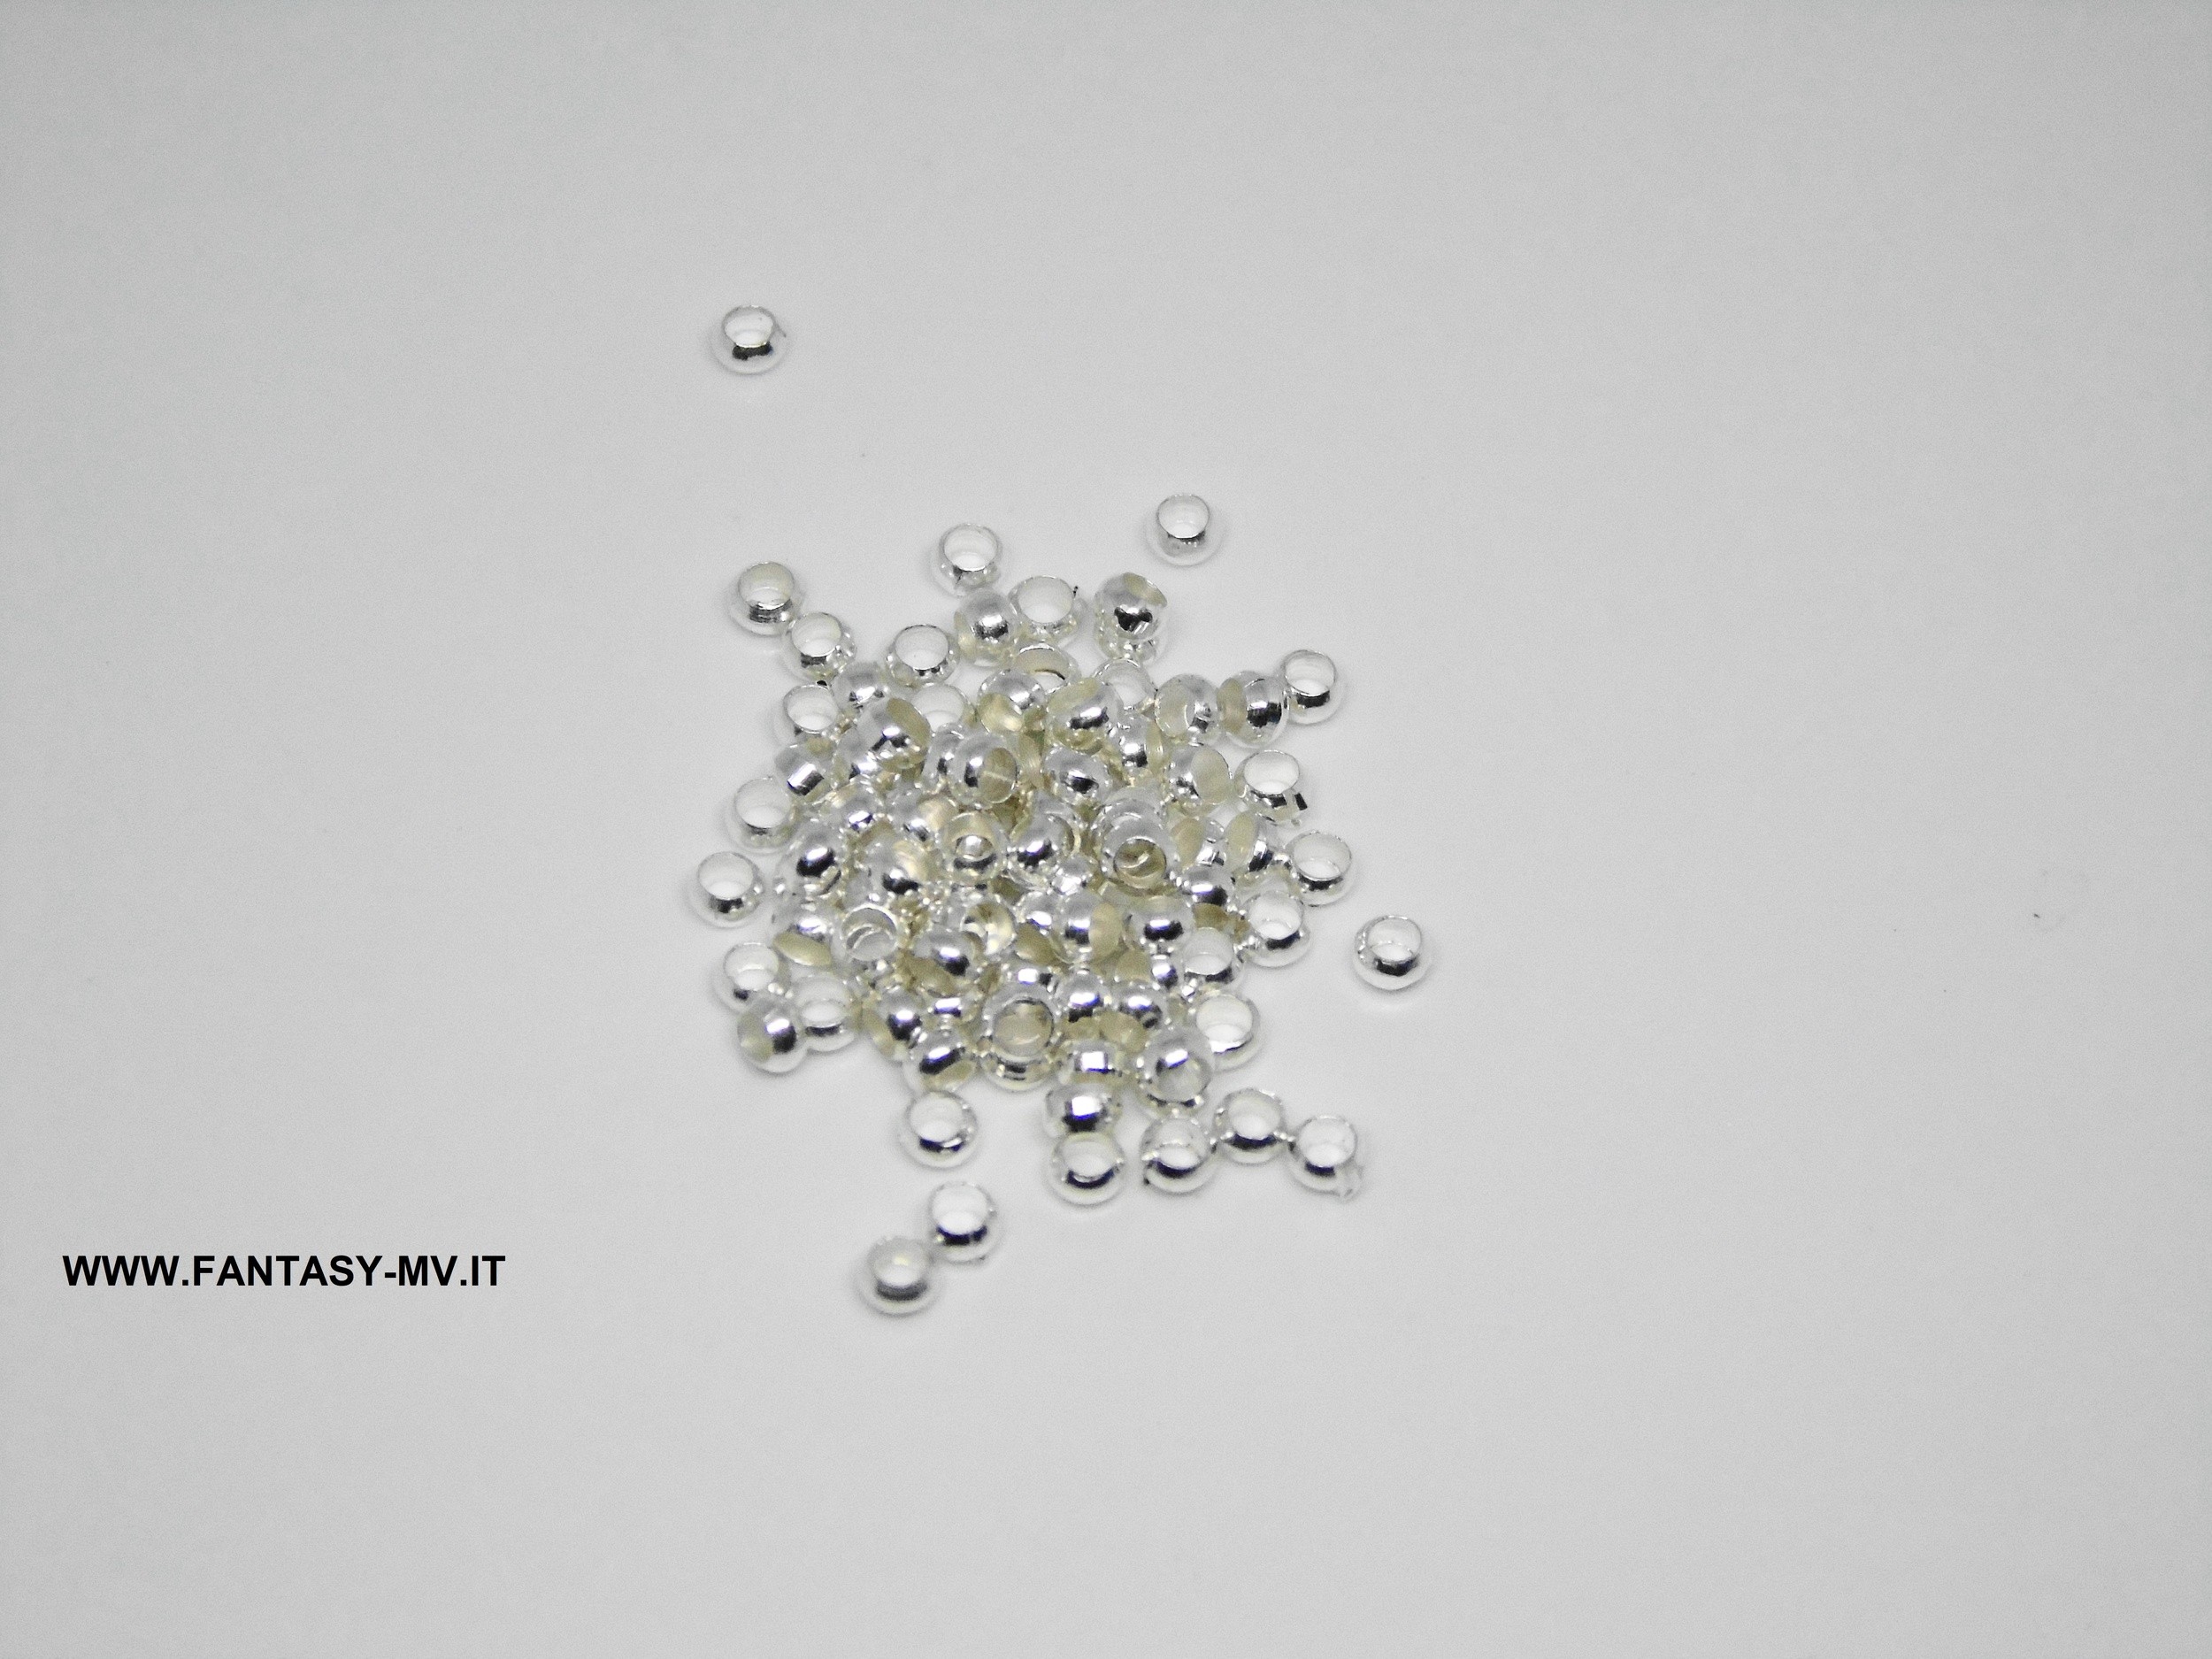 Perle a pressione - Schiaccini 2.5 mm - Silver Componenti per la creazione  di bigiotteria 